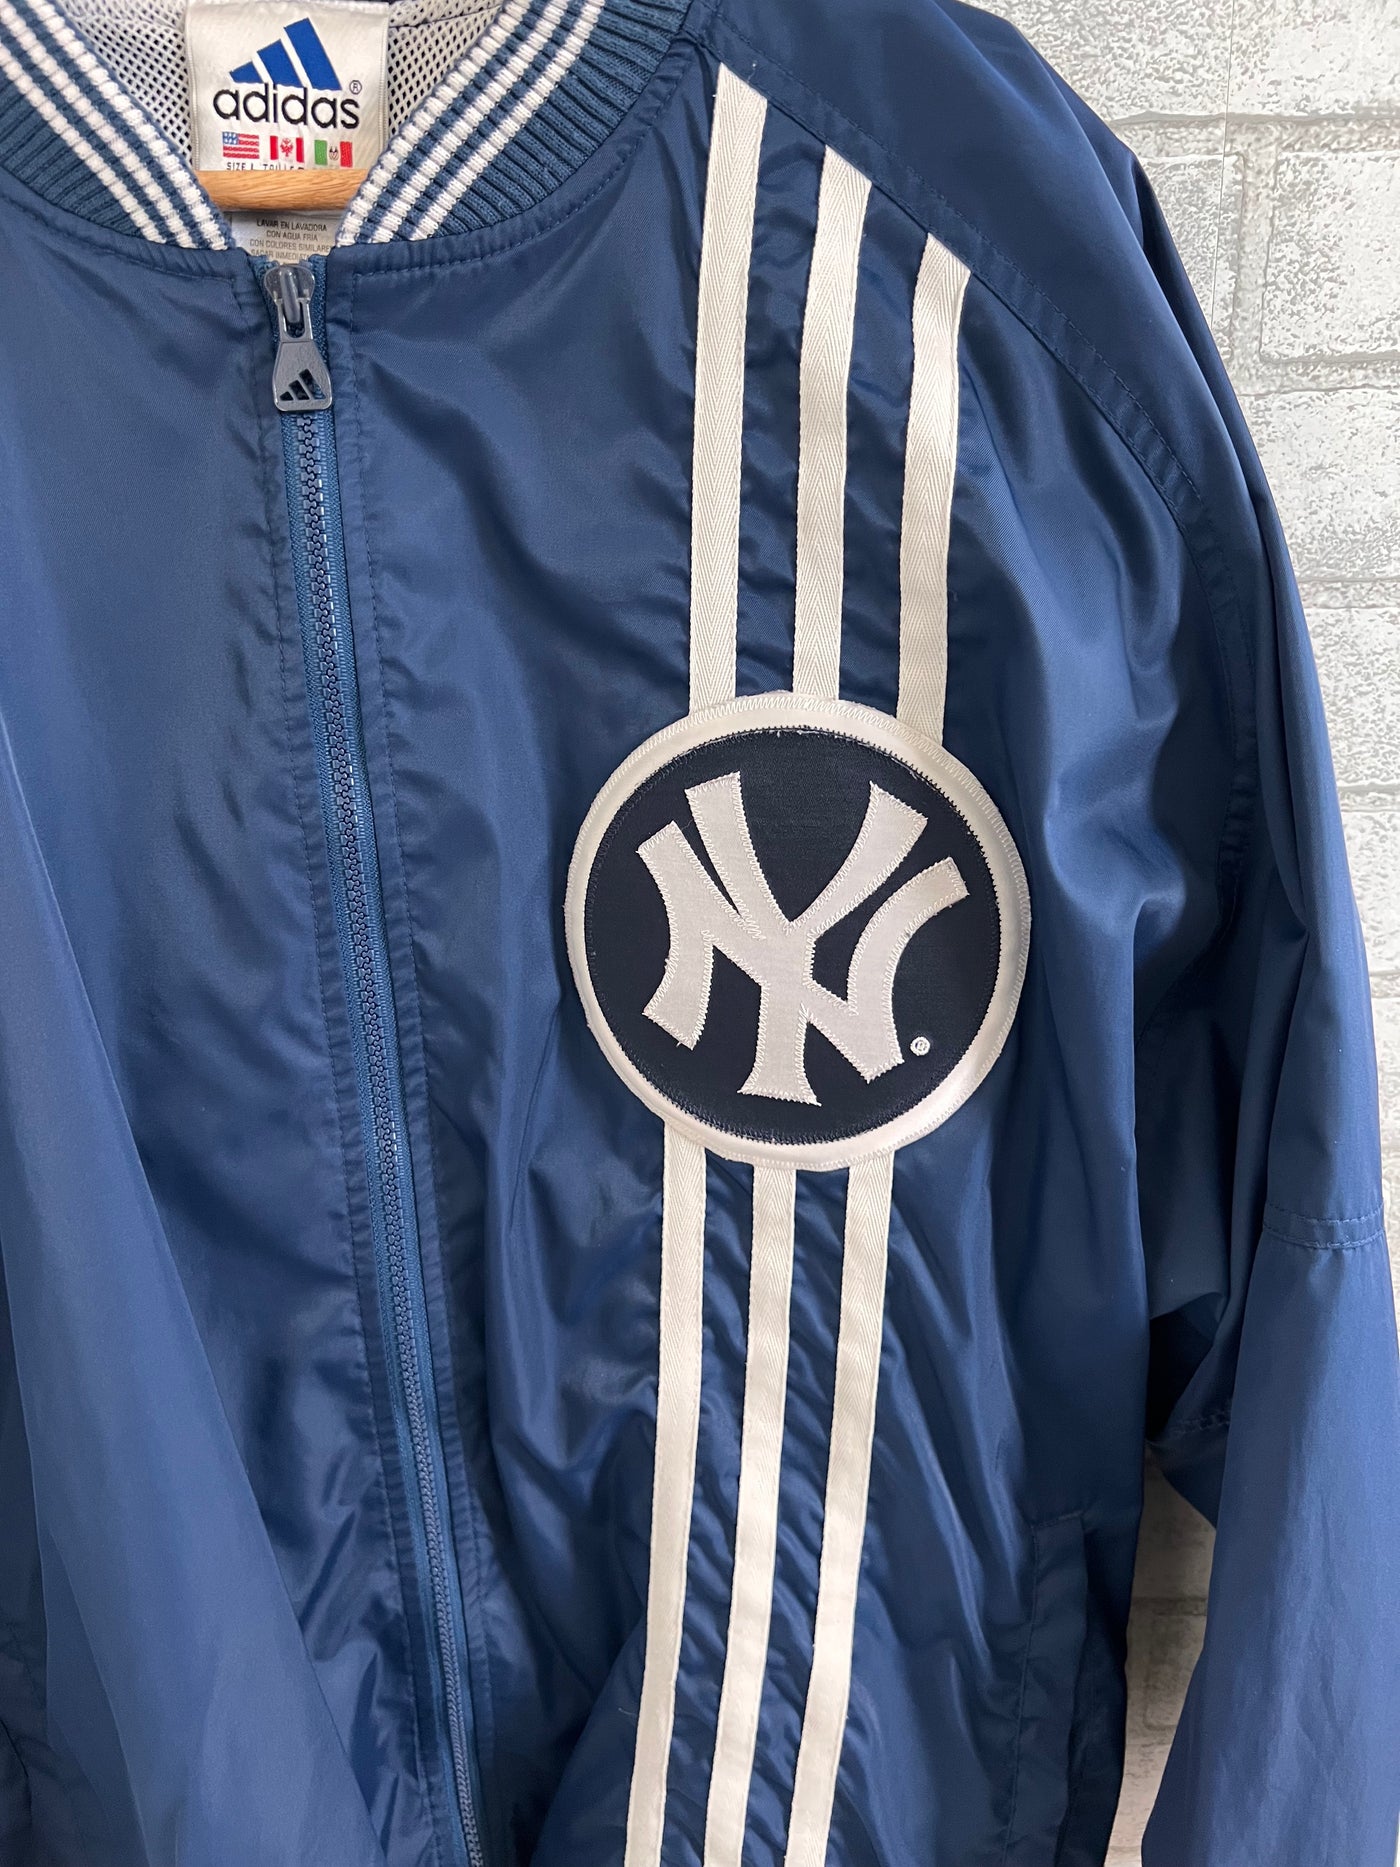 Vintage Adidas X NY Yankees Windbreaker Jacket. Large